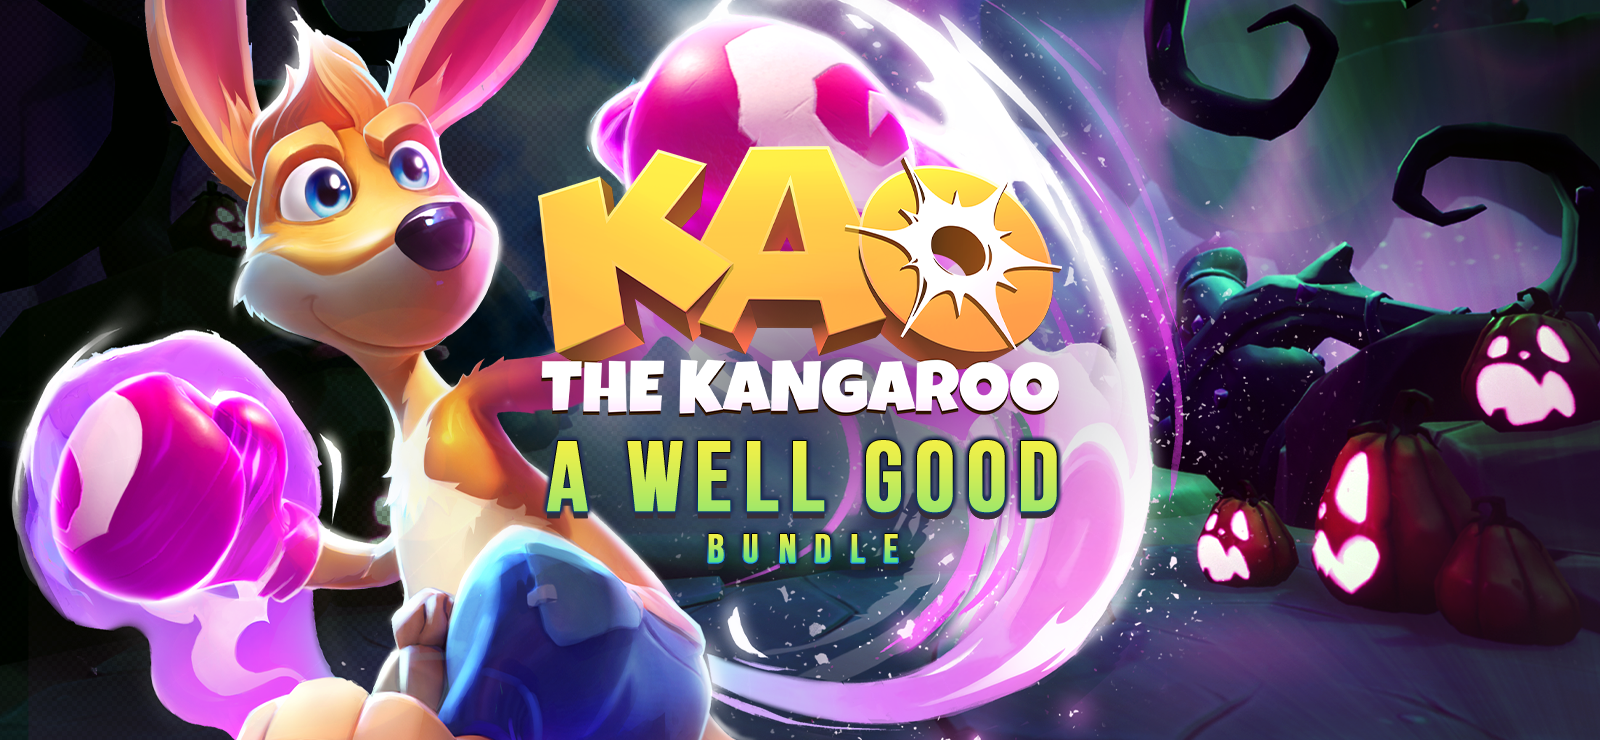 Kao The Kangaroo - A Well Good Bundle